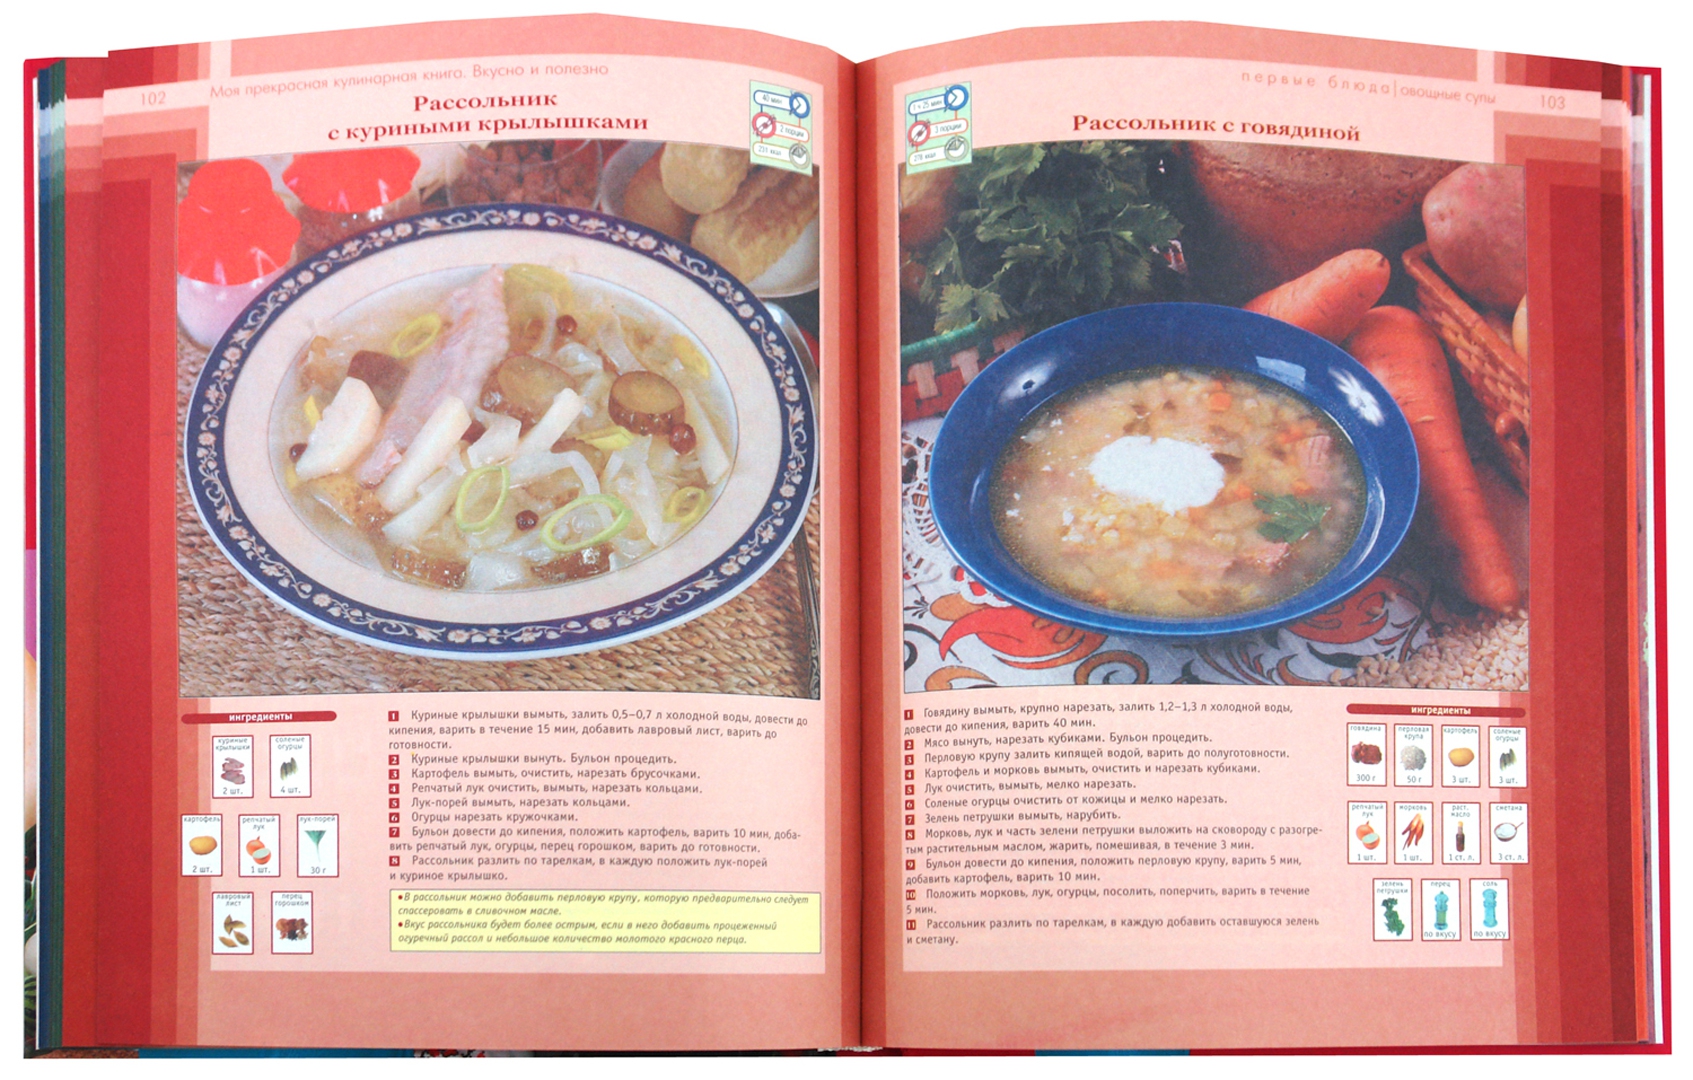 Иллюстрация 1 из 6 для Моя прекрасная кулинарная книга. Вкусно и полезно - Анастасия Заворотнюк | Лабиринт - книги. Источник: Лабиринт